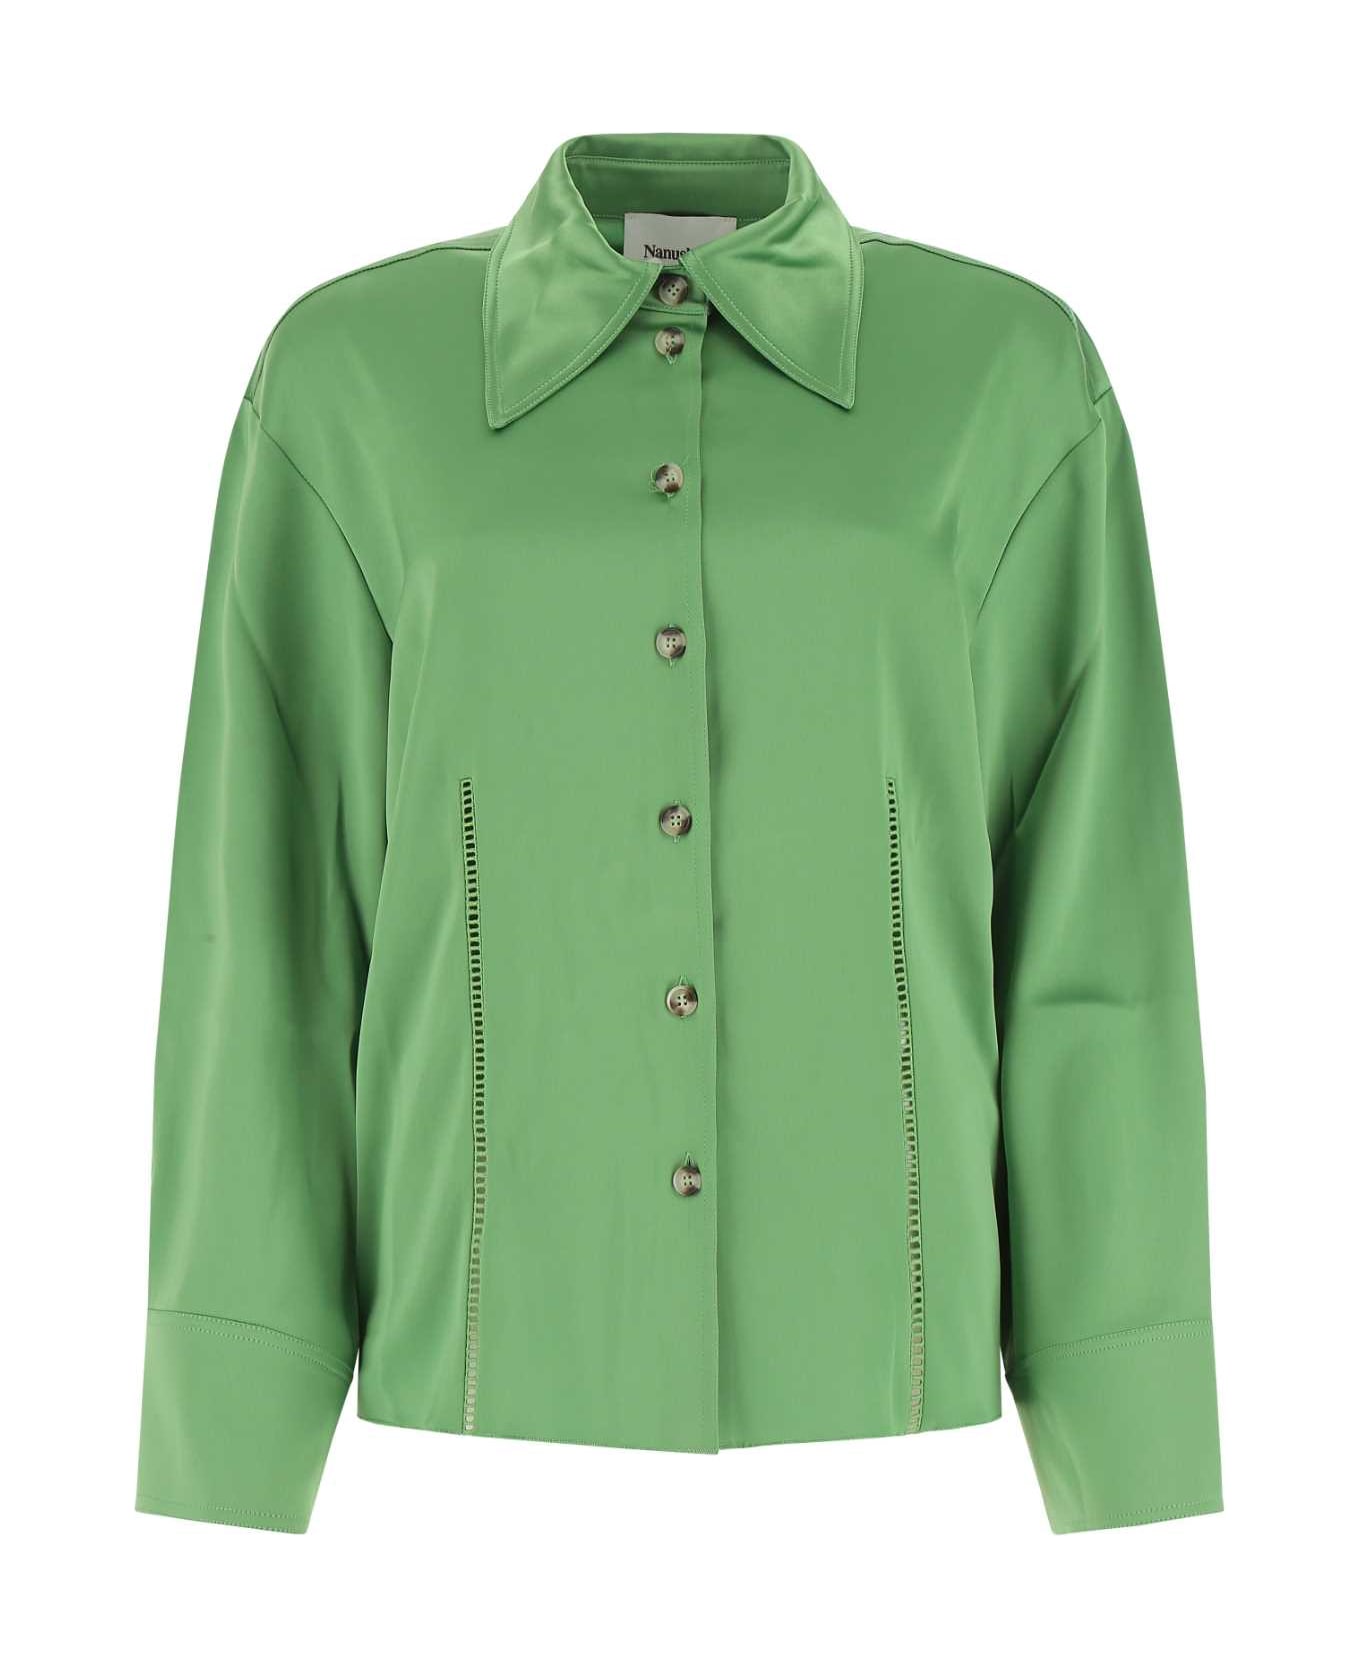 Nanushka Green Satin Shirt - GREEN